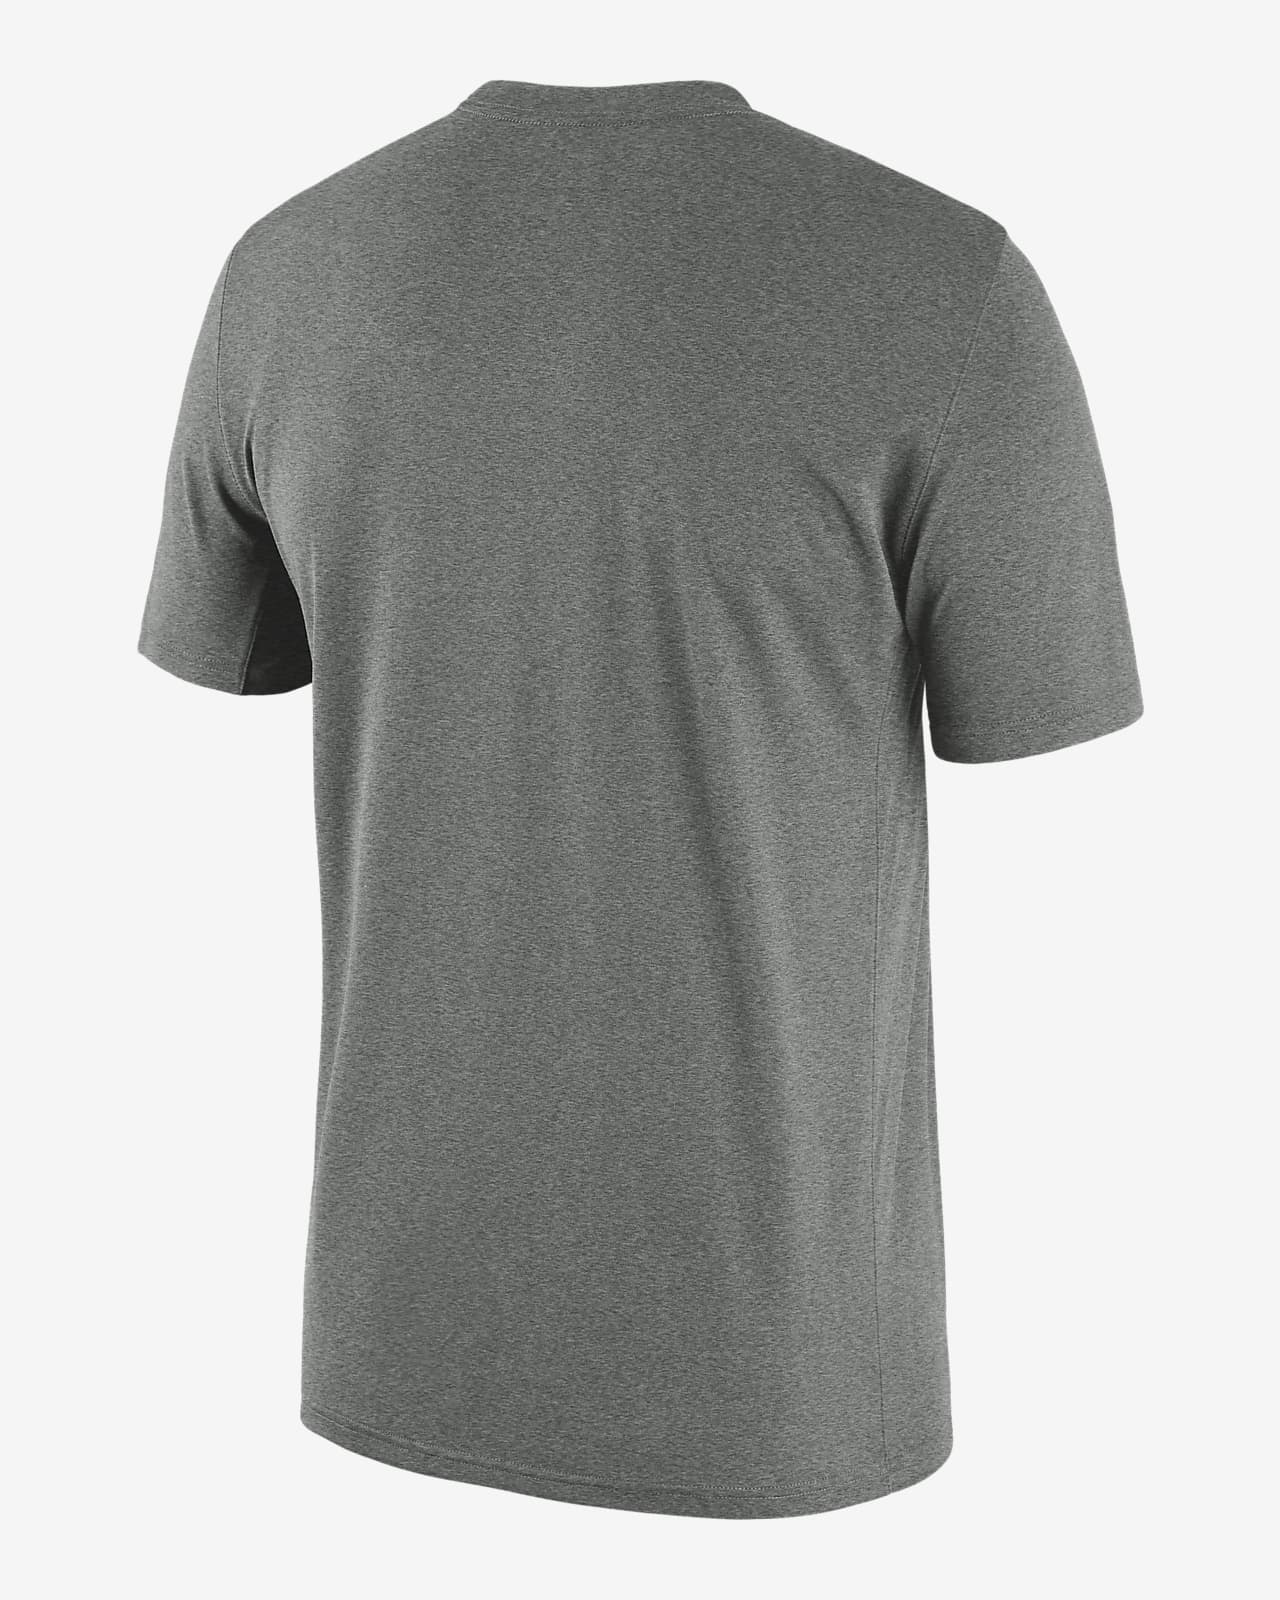 Nike Men's Chicago Bulls Grey Practice T-Shirt, Medium, Gray